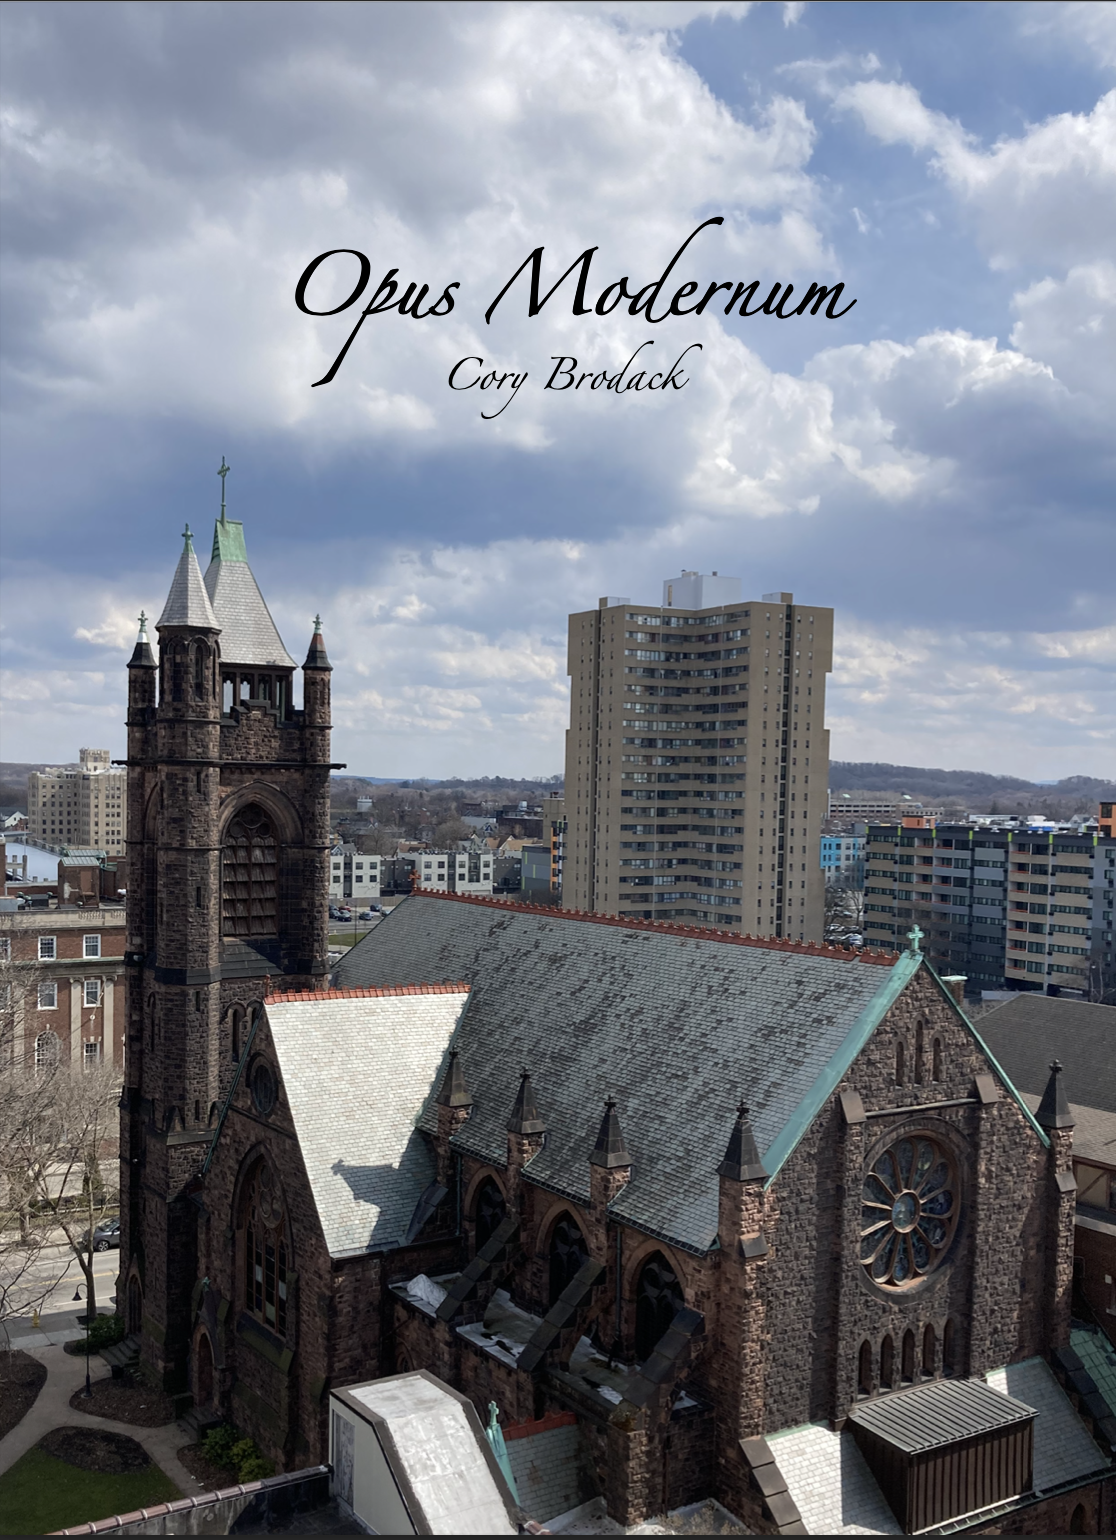 Opus Modernum by Cory Brodack